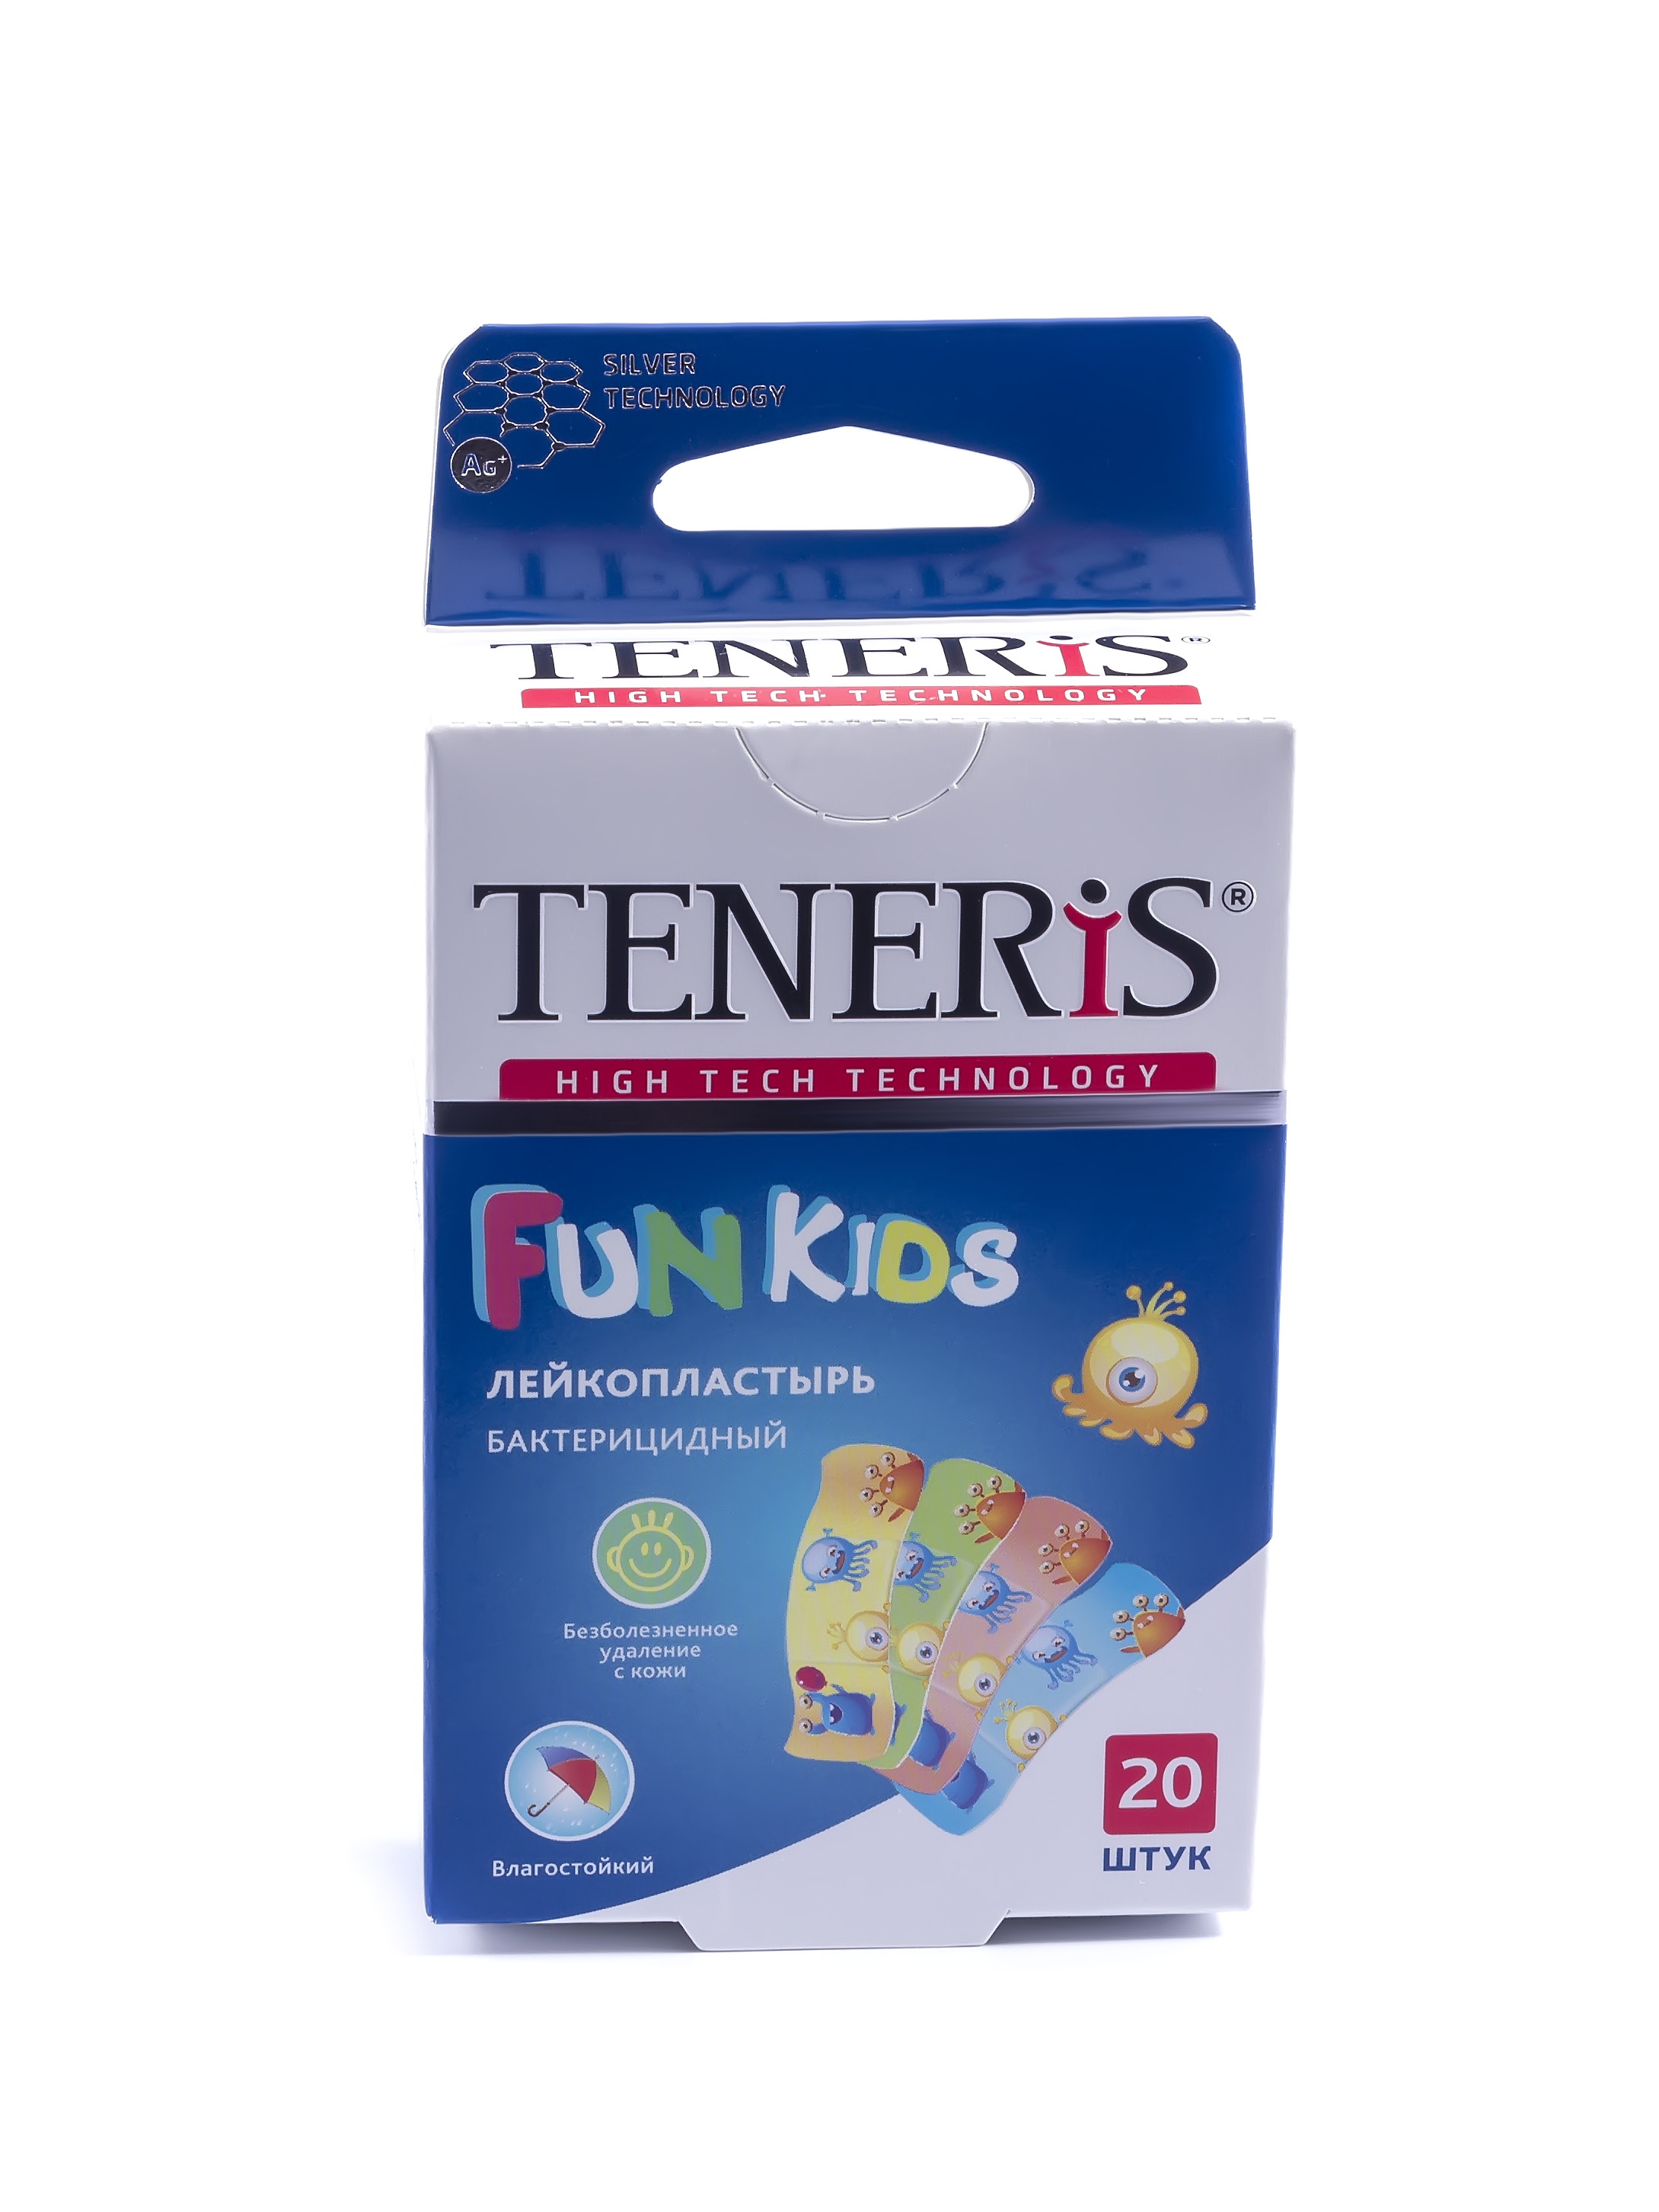 Купить Пластырь Teneris Fun Kids бактерицидный на полимерной основе с рисунками 20 шт., разноцветный